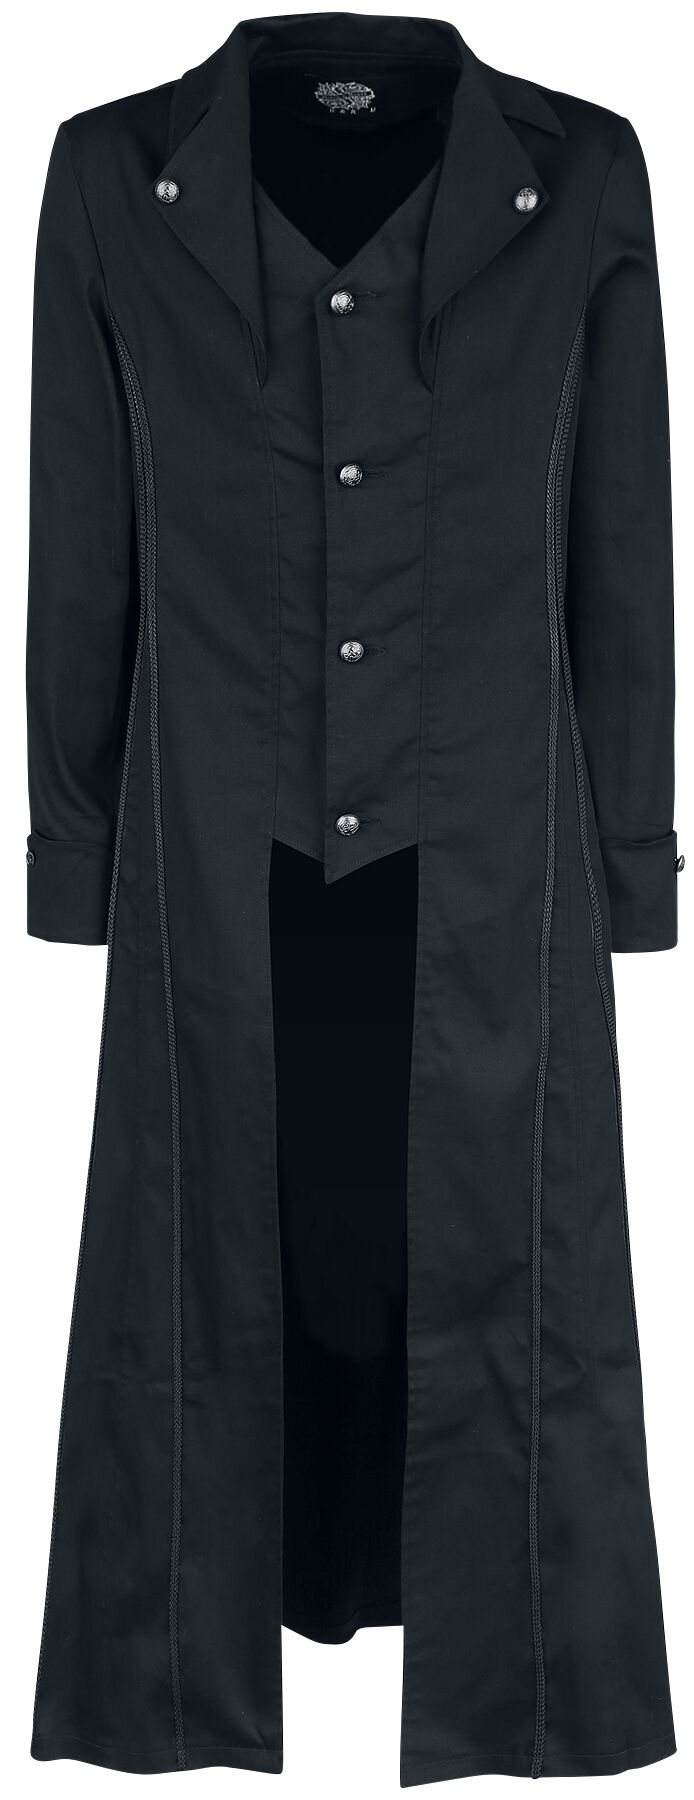 H&R London - Gothic Militärmantel - Black Classic Coat - S bis XXL - für Männer - Größe XL - schwarz von H&R London